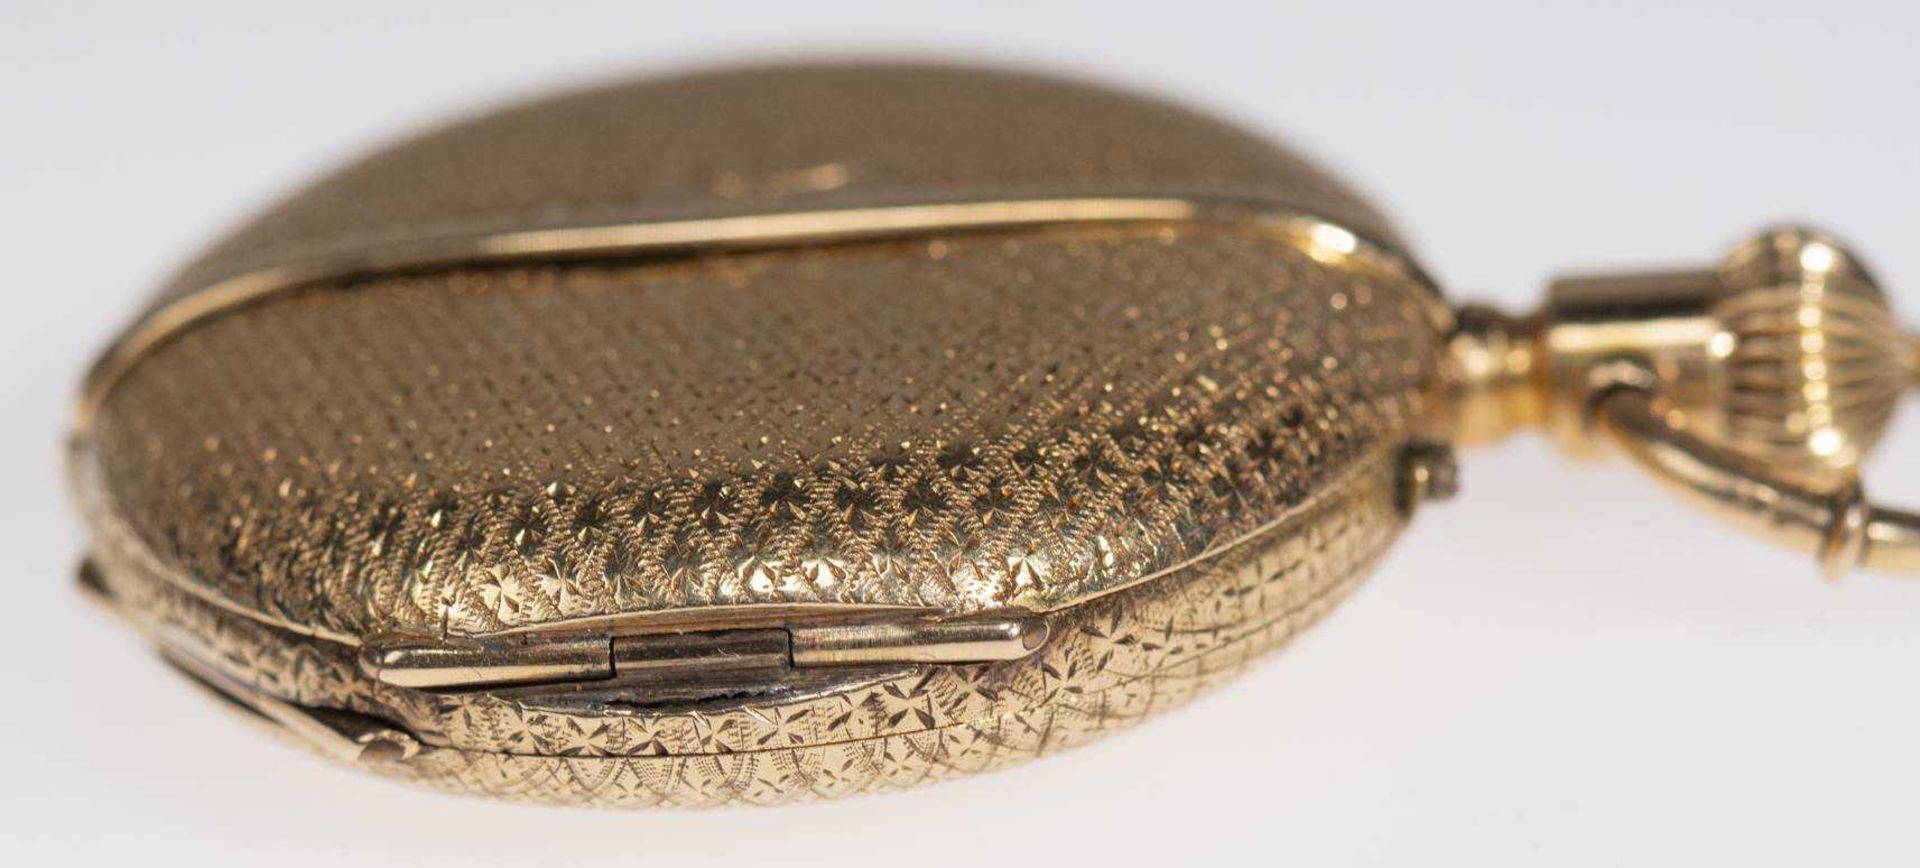 Savonette Taschenuhr. Ca. 36,5mm, 750er Gold, Handaufzug. Emailliertes Ziffernblatt mit goldenen Zei - Bild 4 aus 6